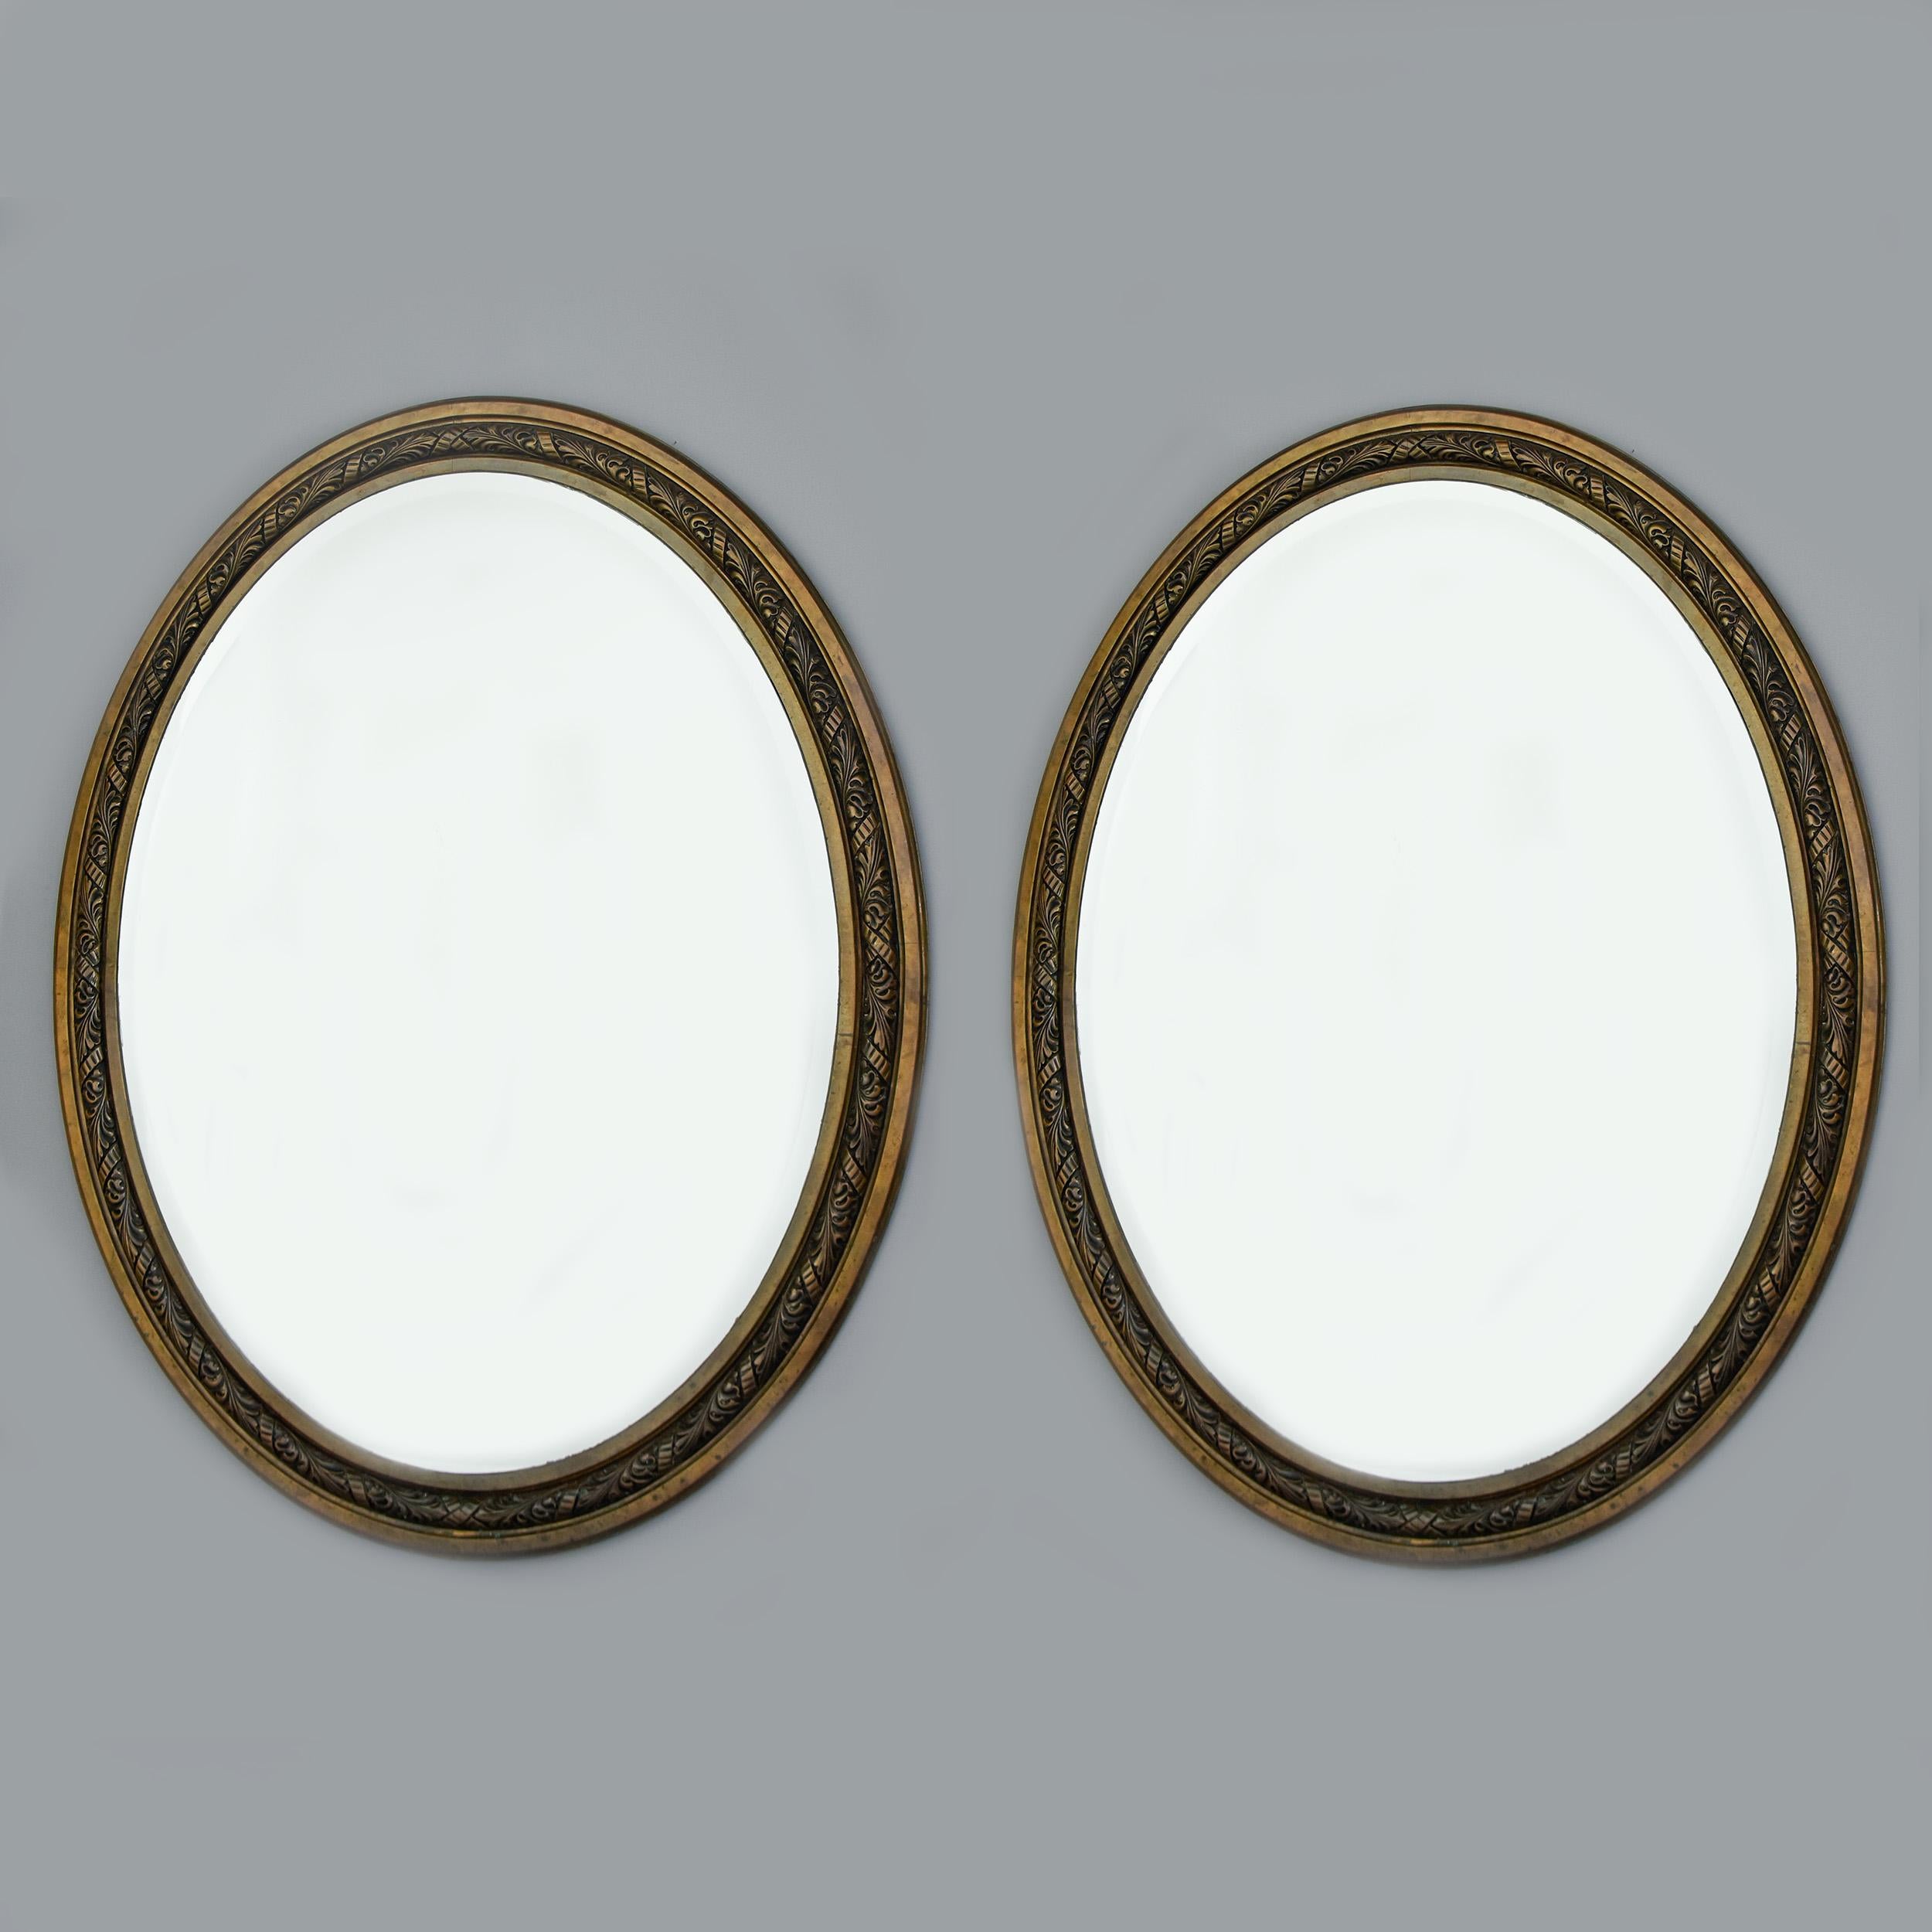 Grande paire de miroirs ovales Art Nouveau français dans des cadres en bronze datant d'environ 1910. Les cadres mesurent 57